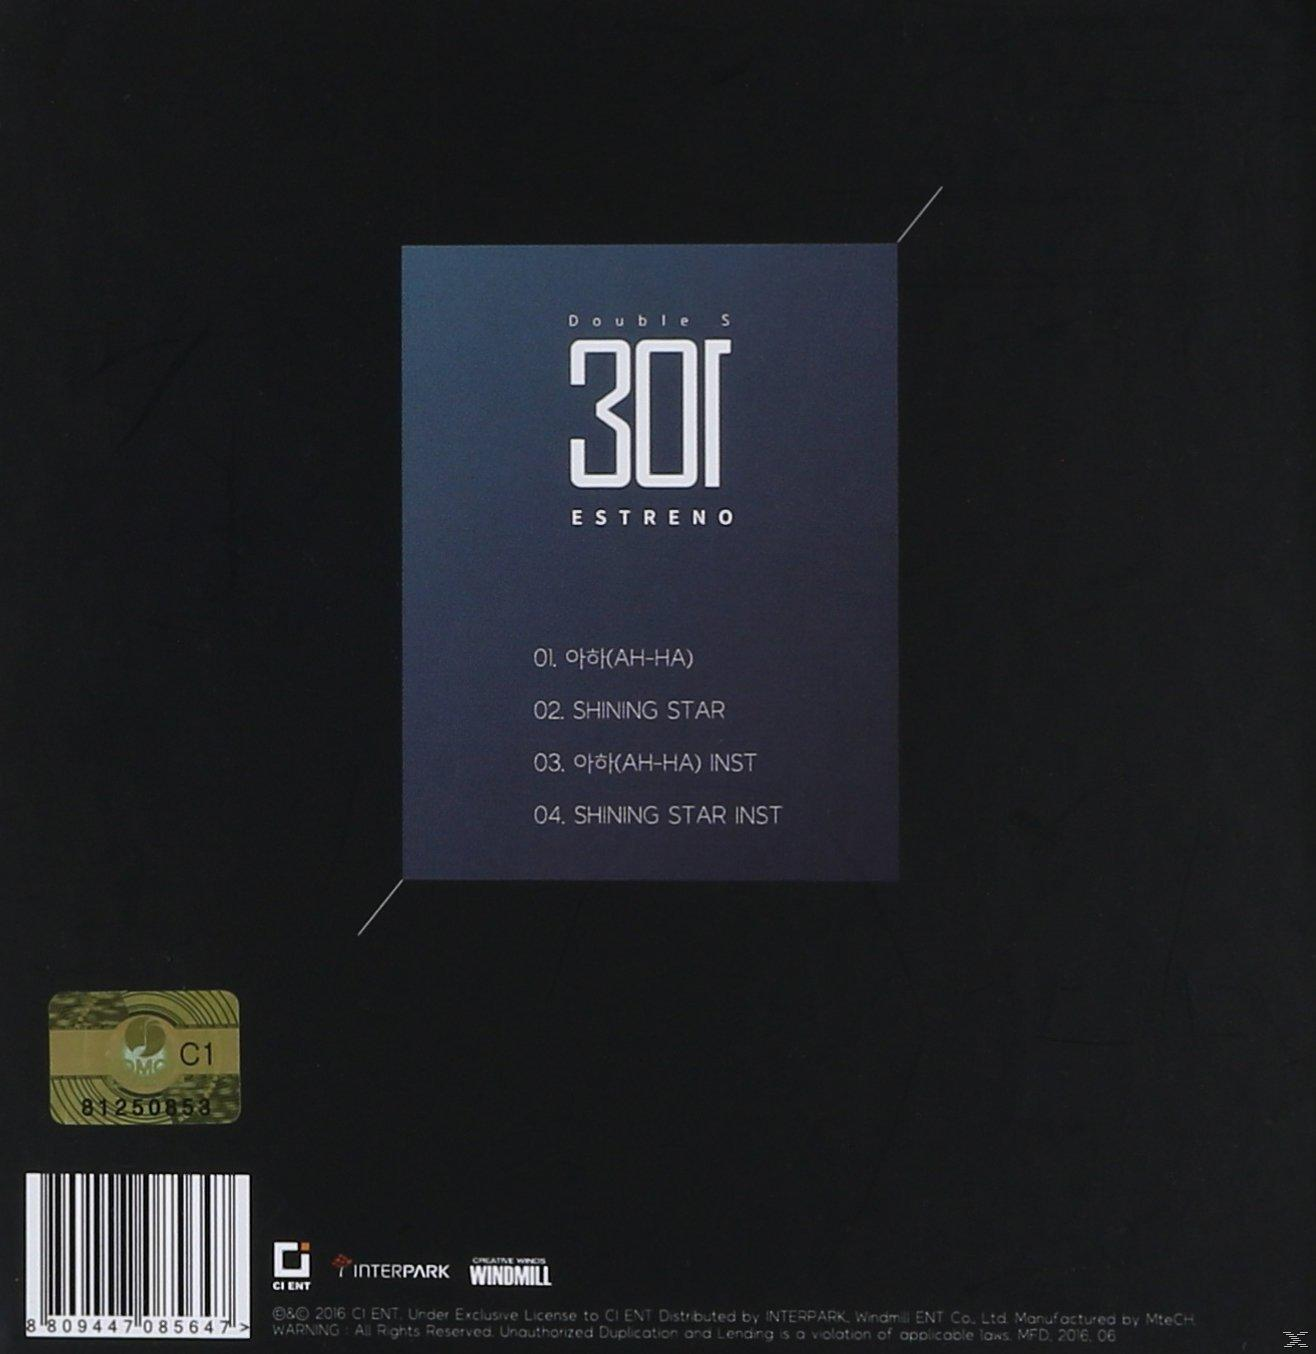 (CD) 301 Double Estreno - - S